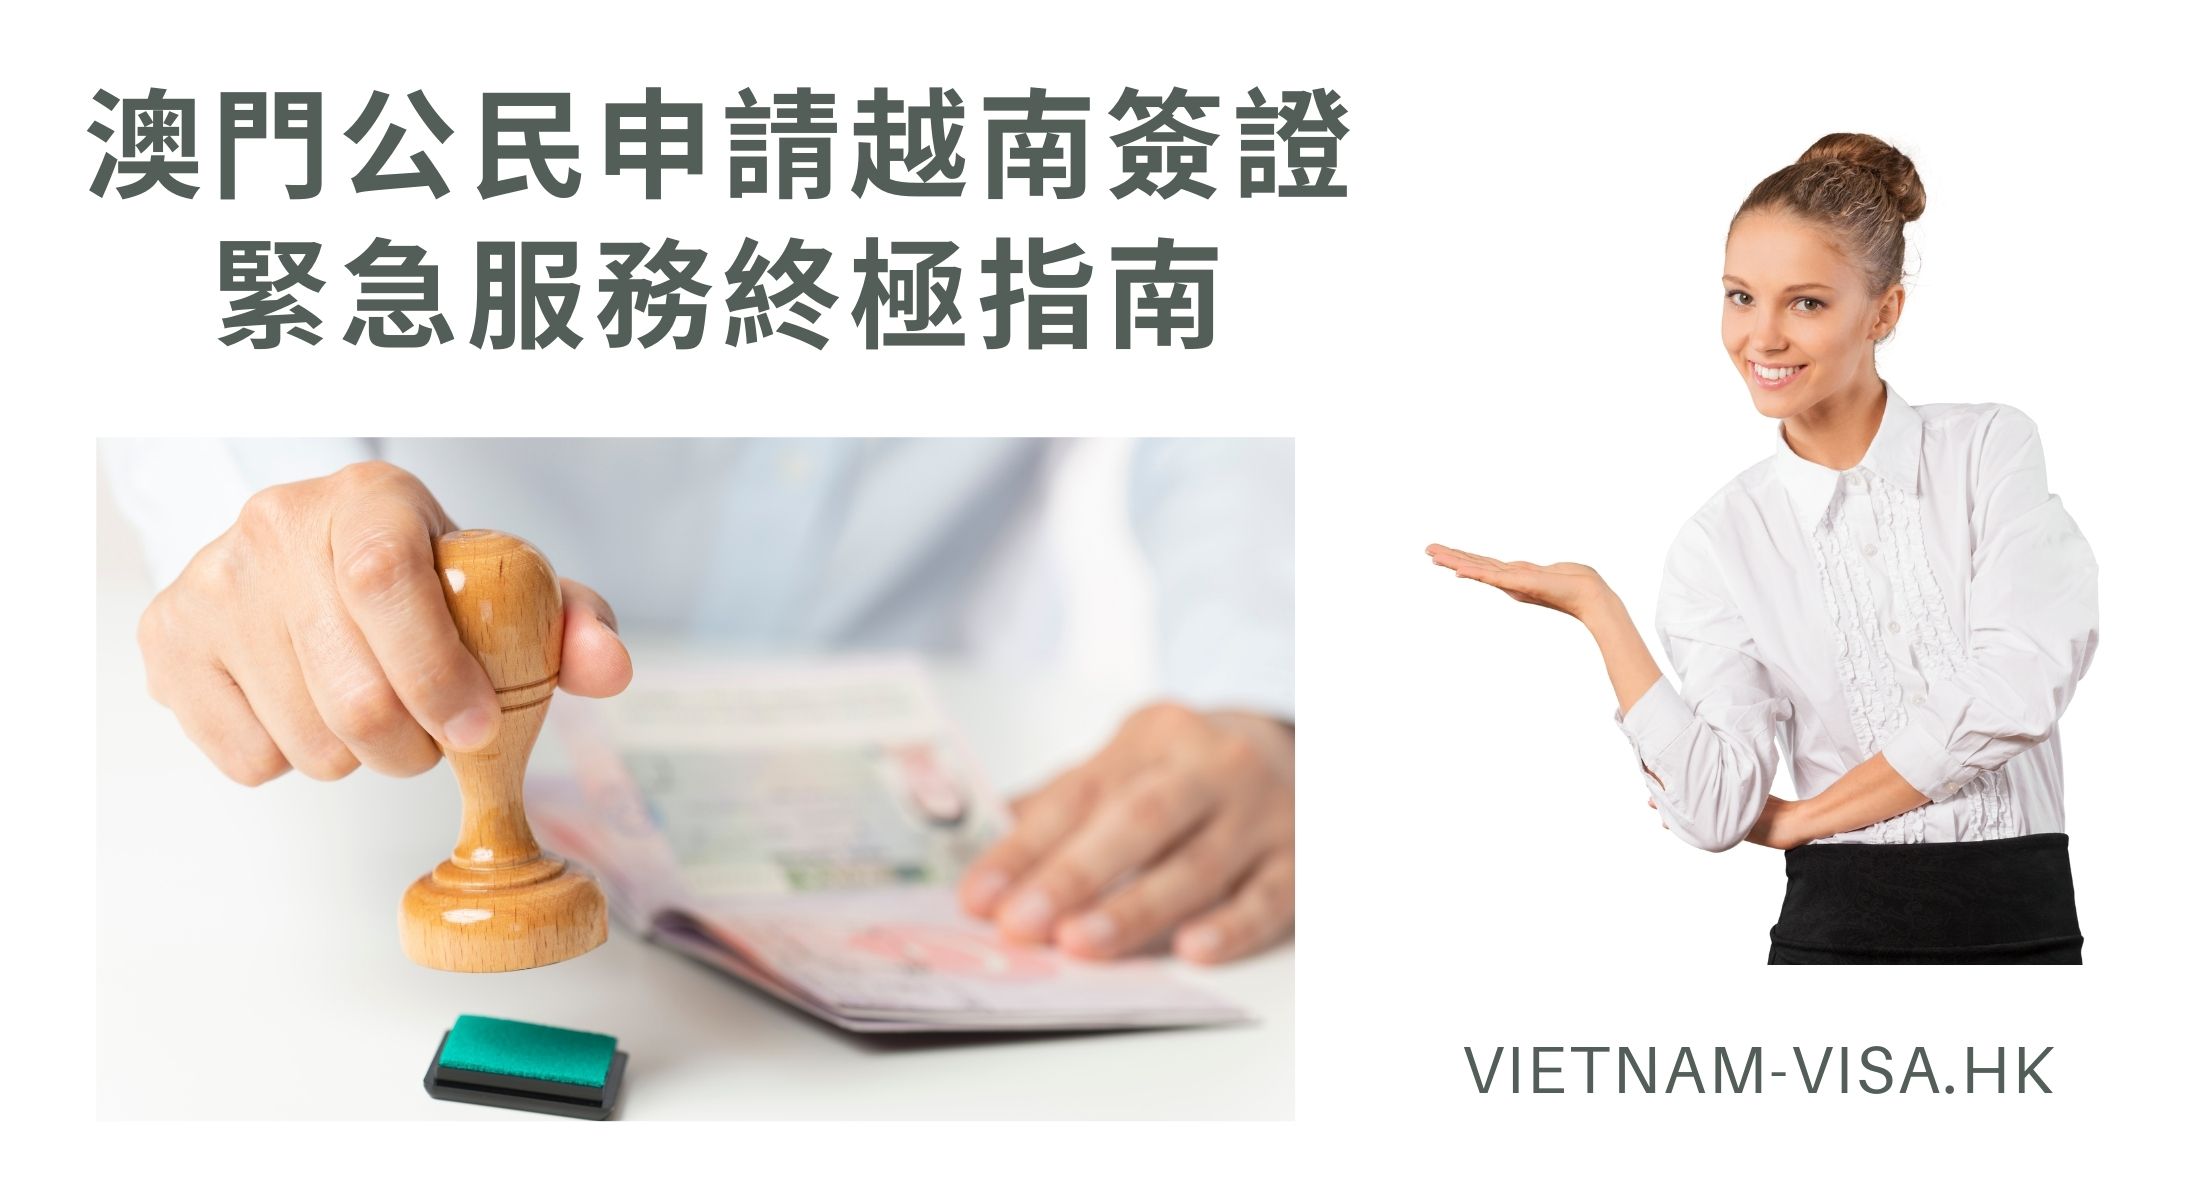 澳門公民申請越南簽證緊急服務終極指南